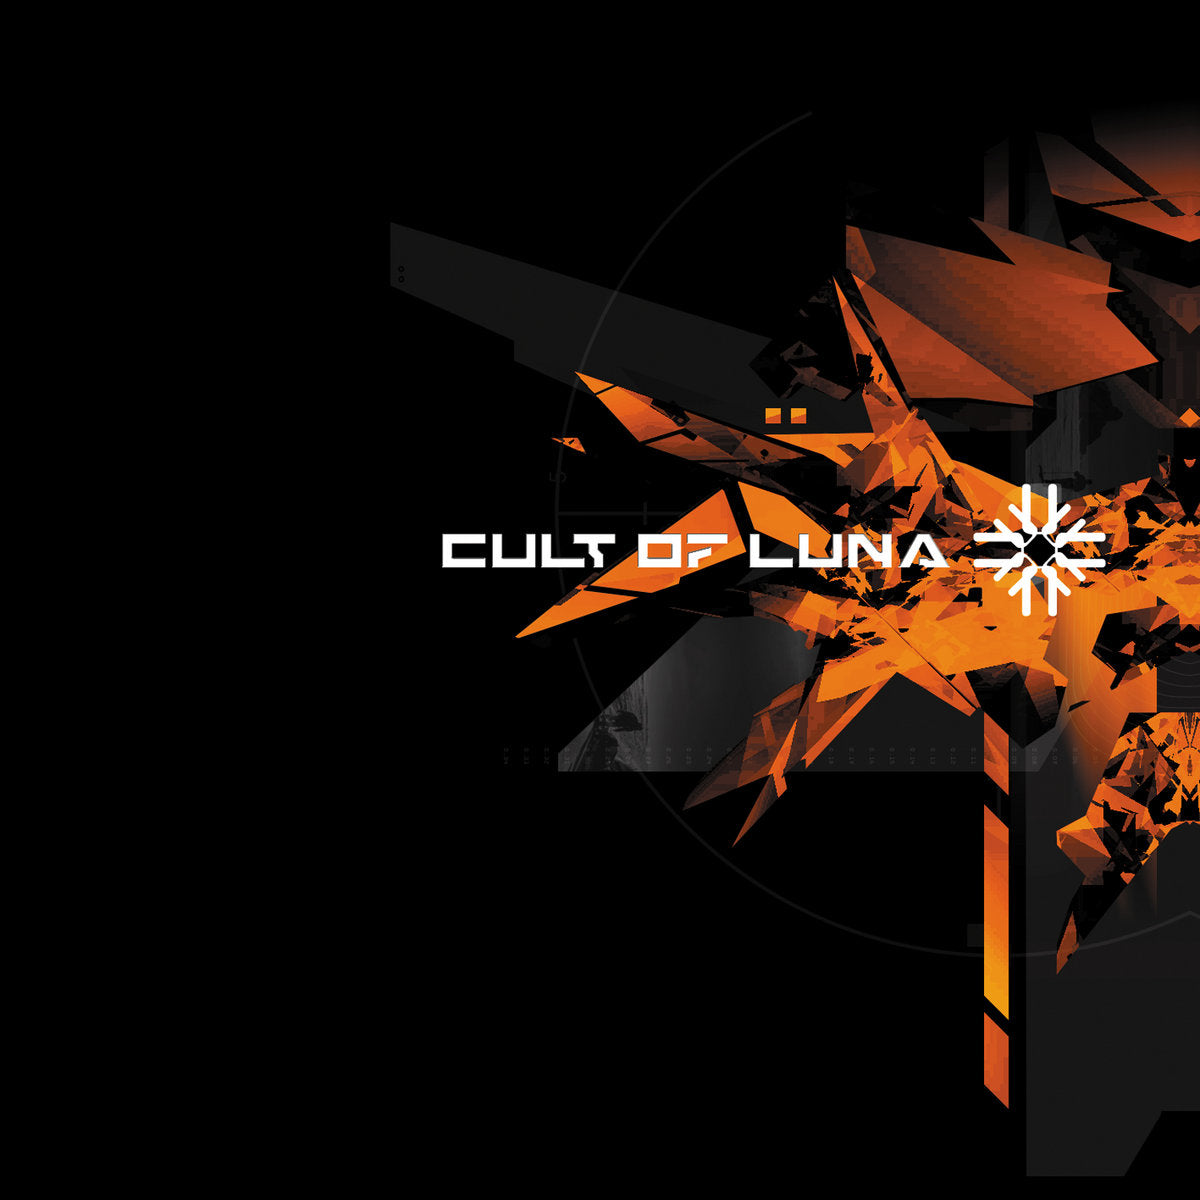 Cult Of Luna "Cult of Luna"  CD